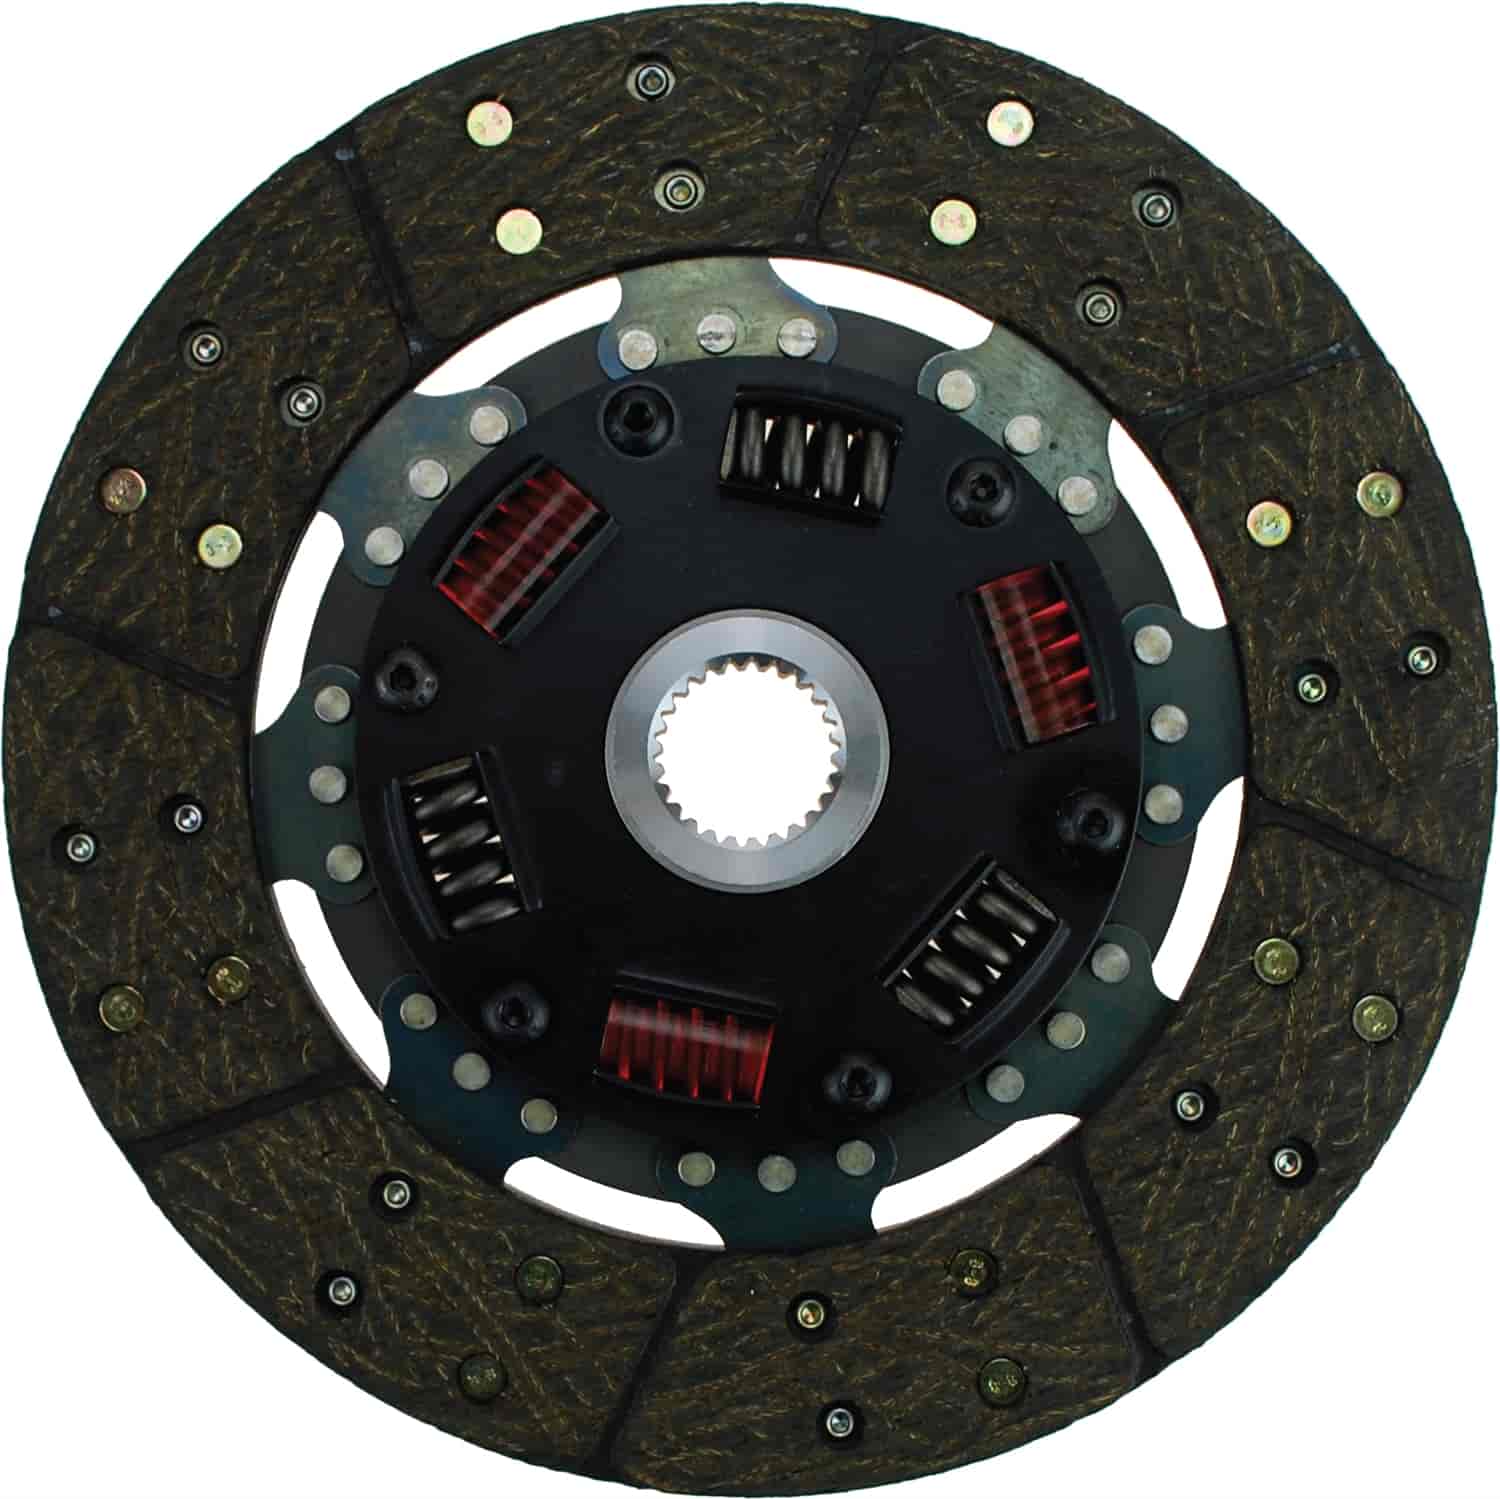 300 Series Sprung Center Clutch Disc 9-1/2" Diameter